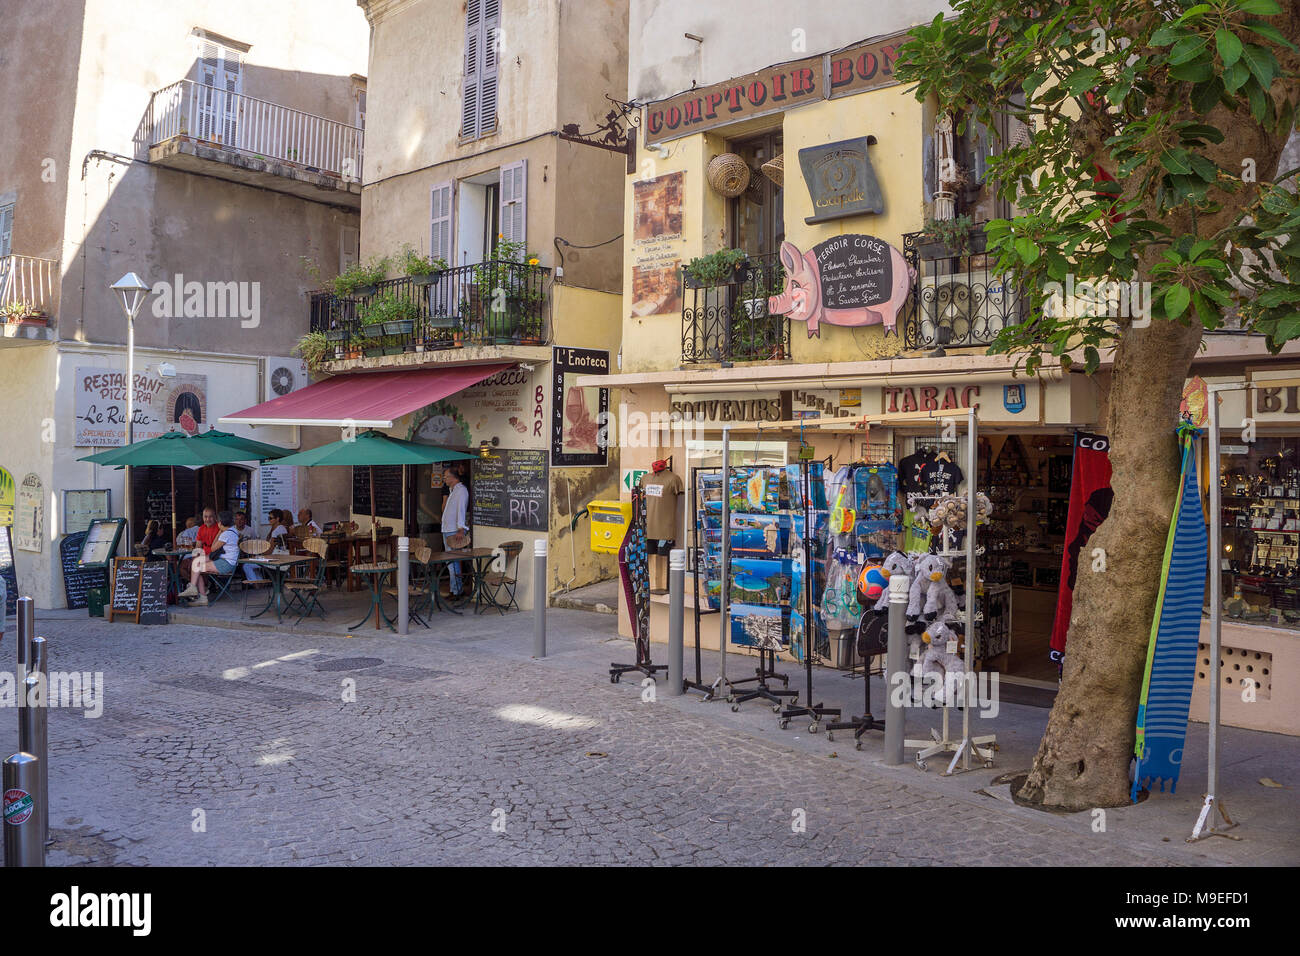 Boutique de souvenirs et un bar à l'ancienne ville de Bonifacio, Corse, France, Europe, Méditerranée Banque D'Images